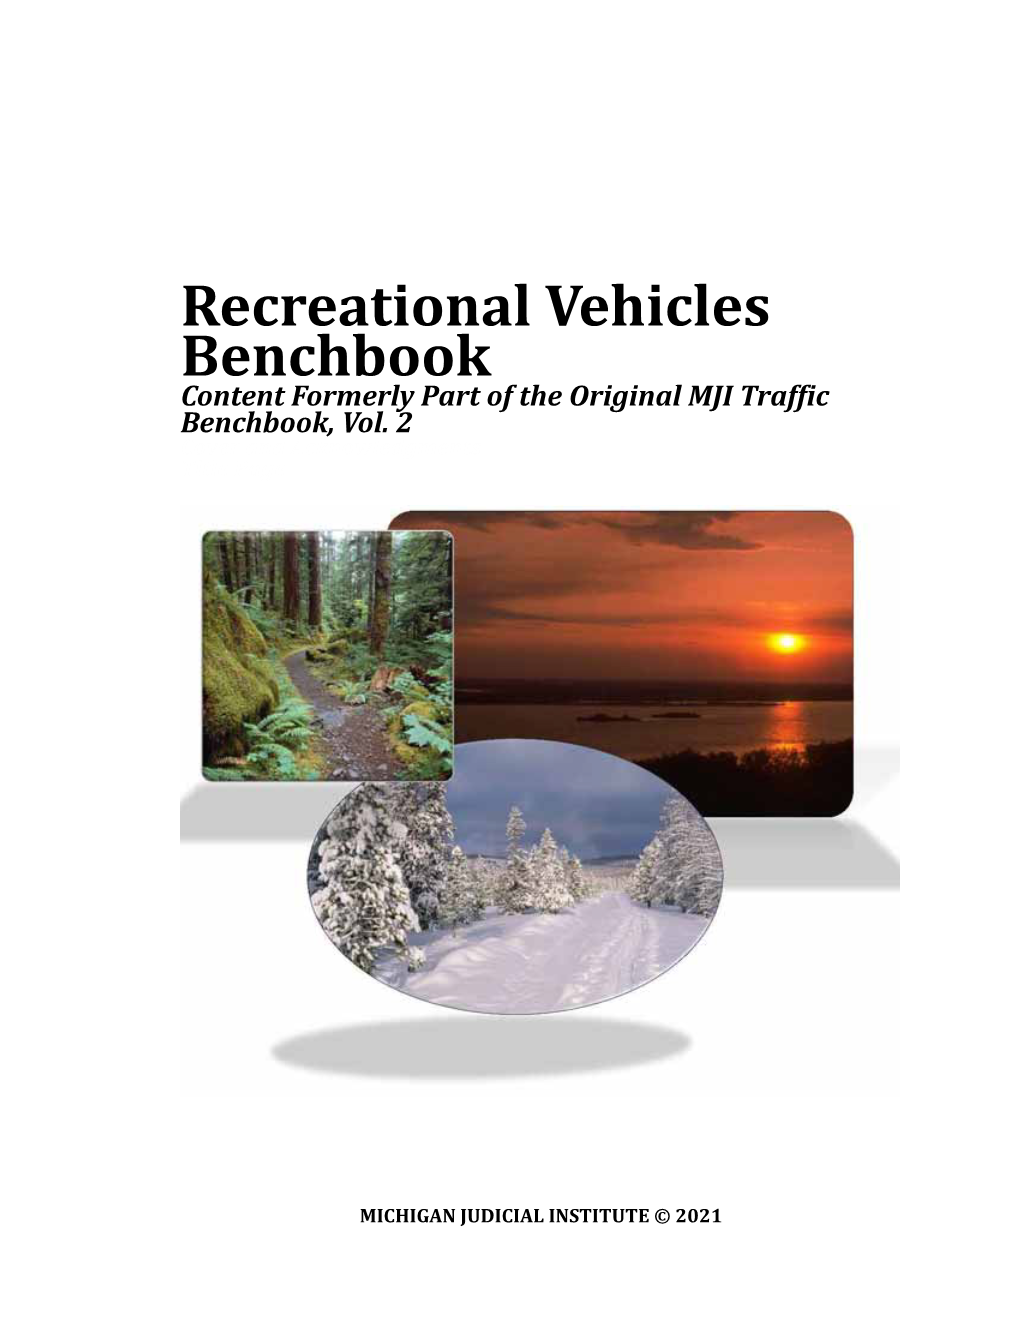 MJI Traffic Benchbook, Vol